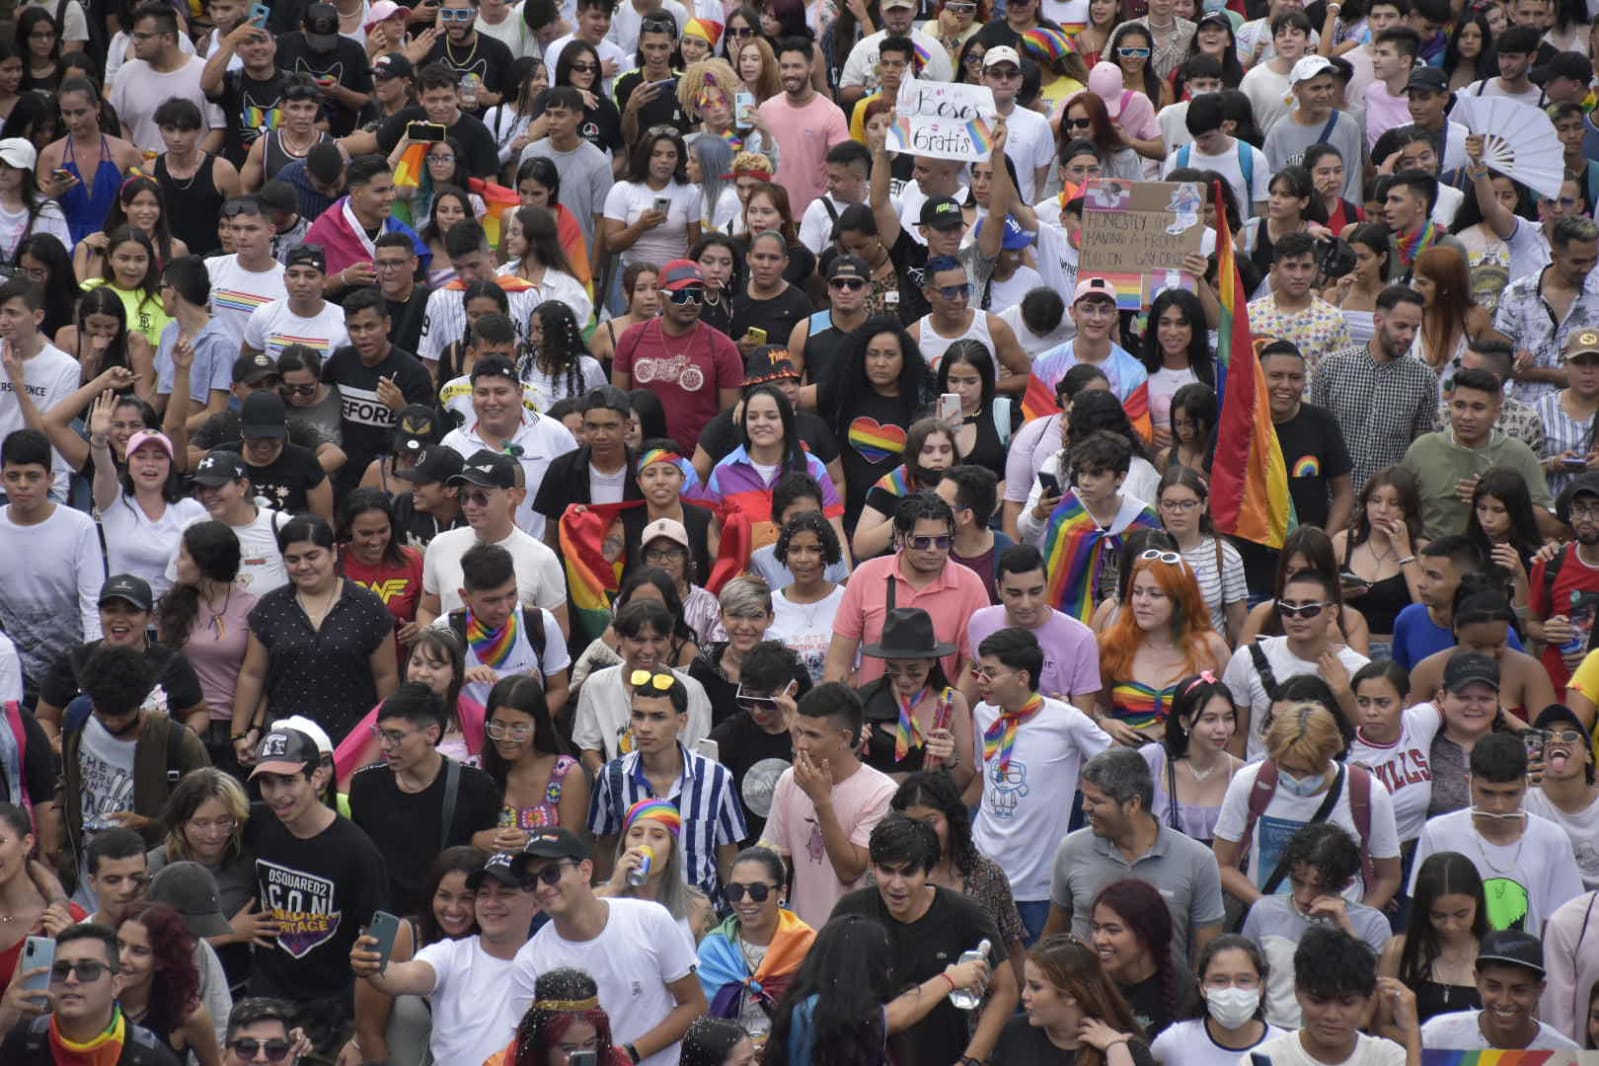 La diversidad es el tema de este domingo en Cúcuta. (Foto Pablo Castillo / La Opinión)